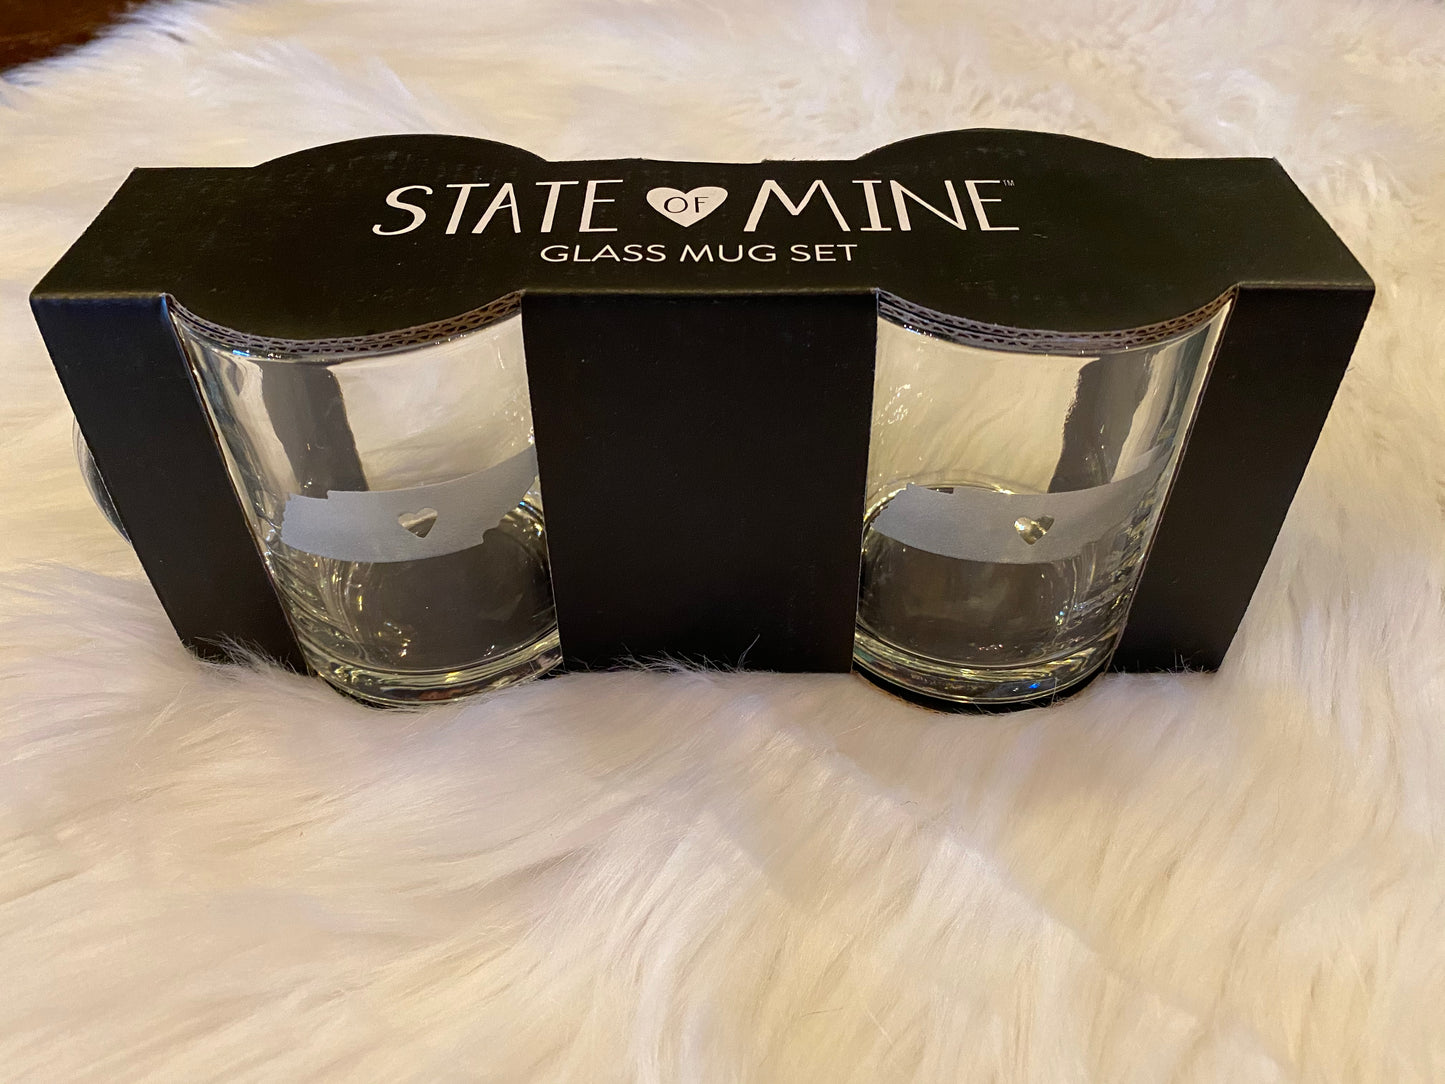 * State of Mine Glass Mug Set